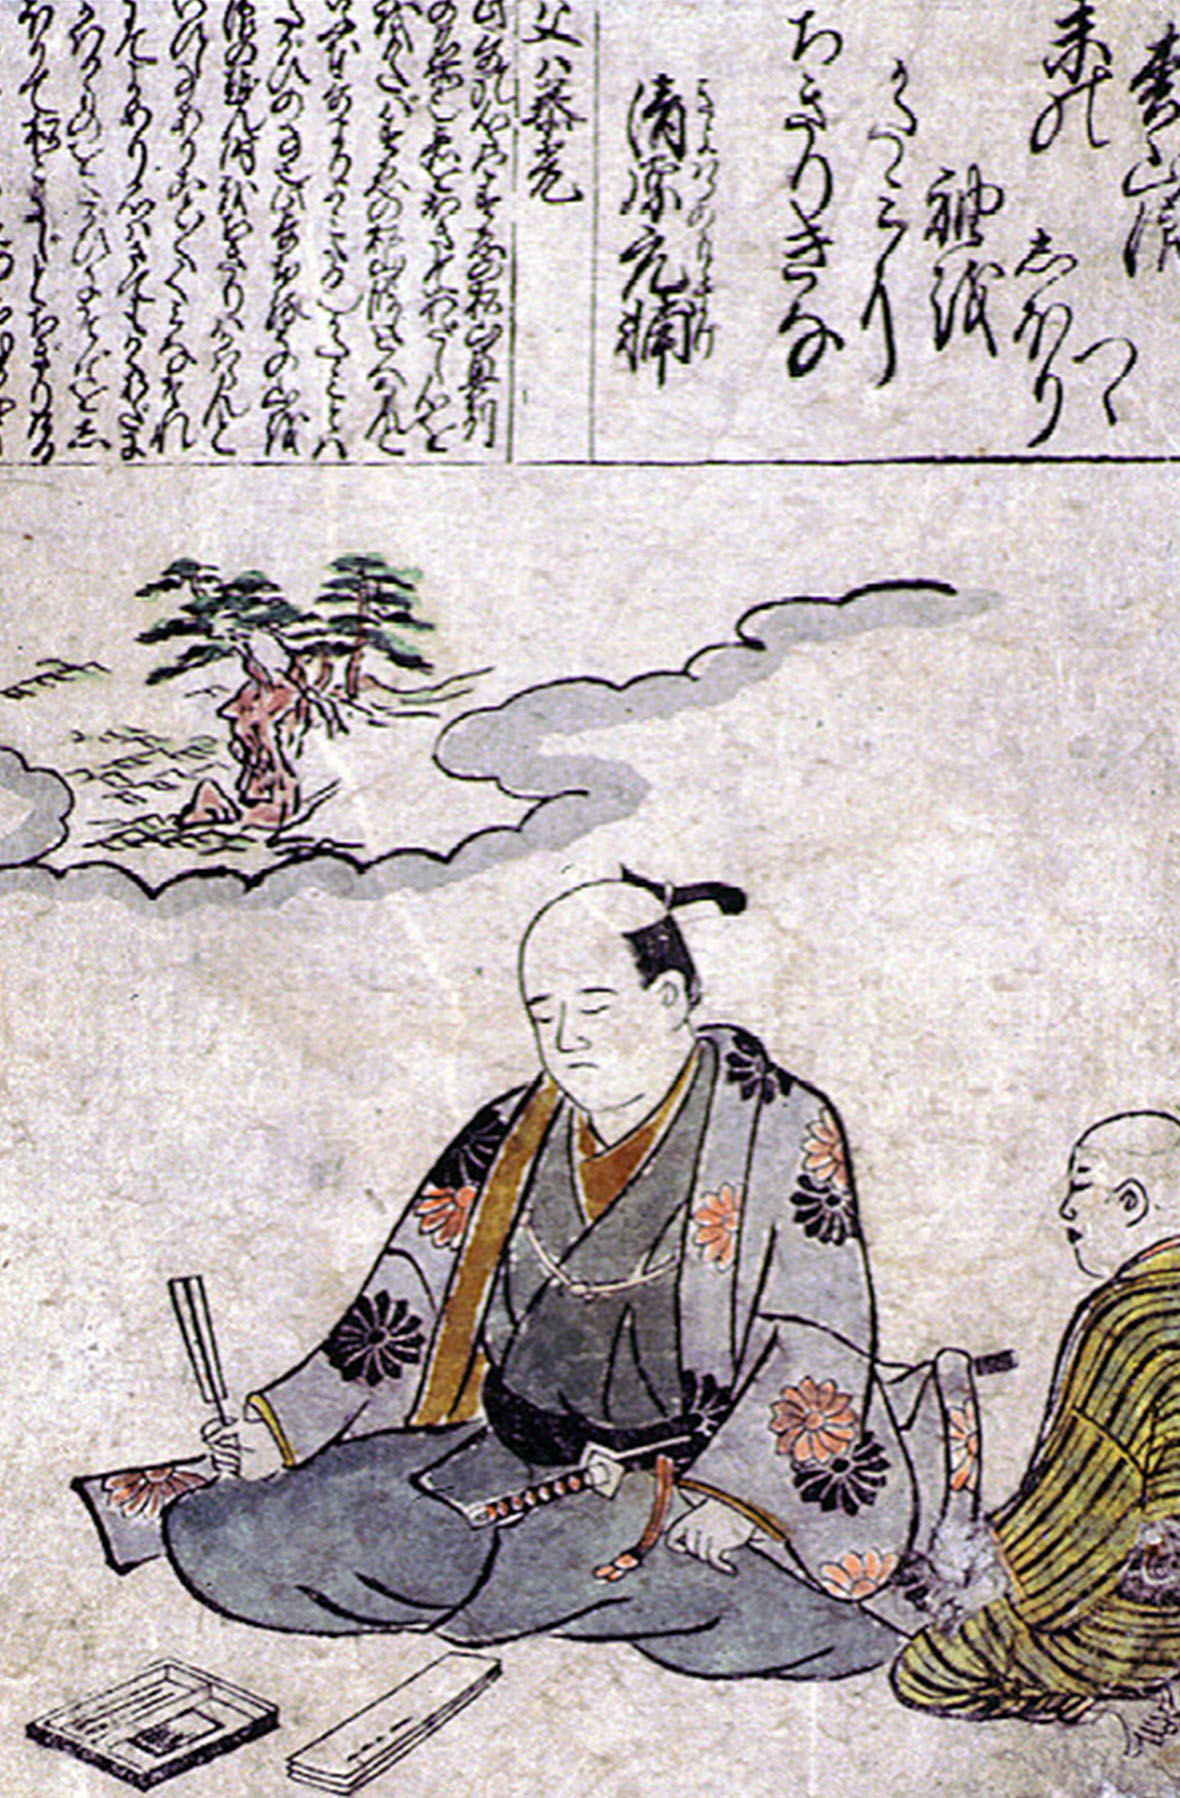 The Poet Kiyohara no Motosuke by Hishikawa Moronobu